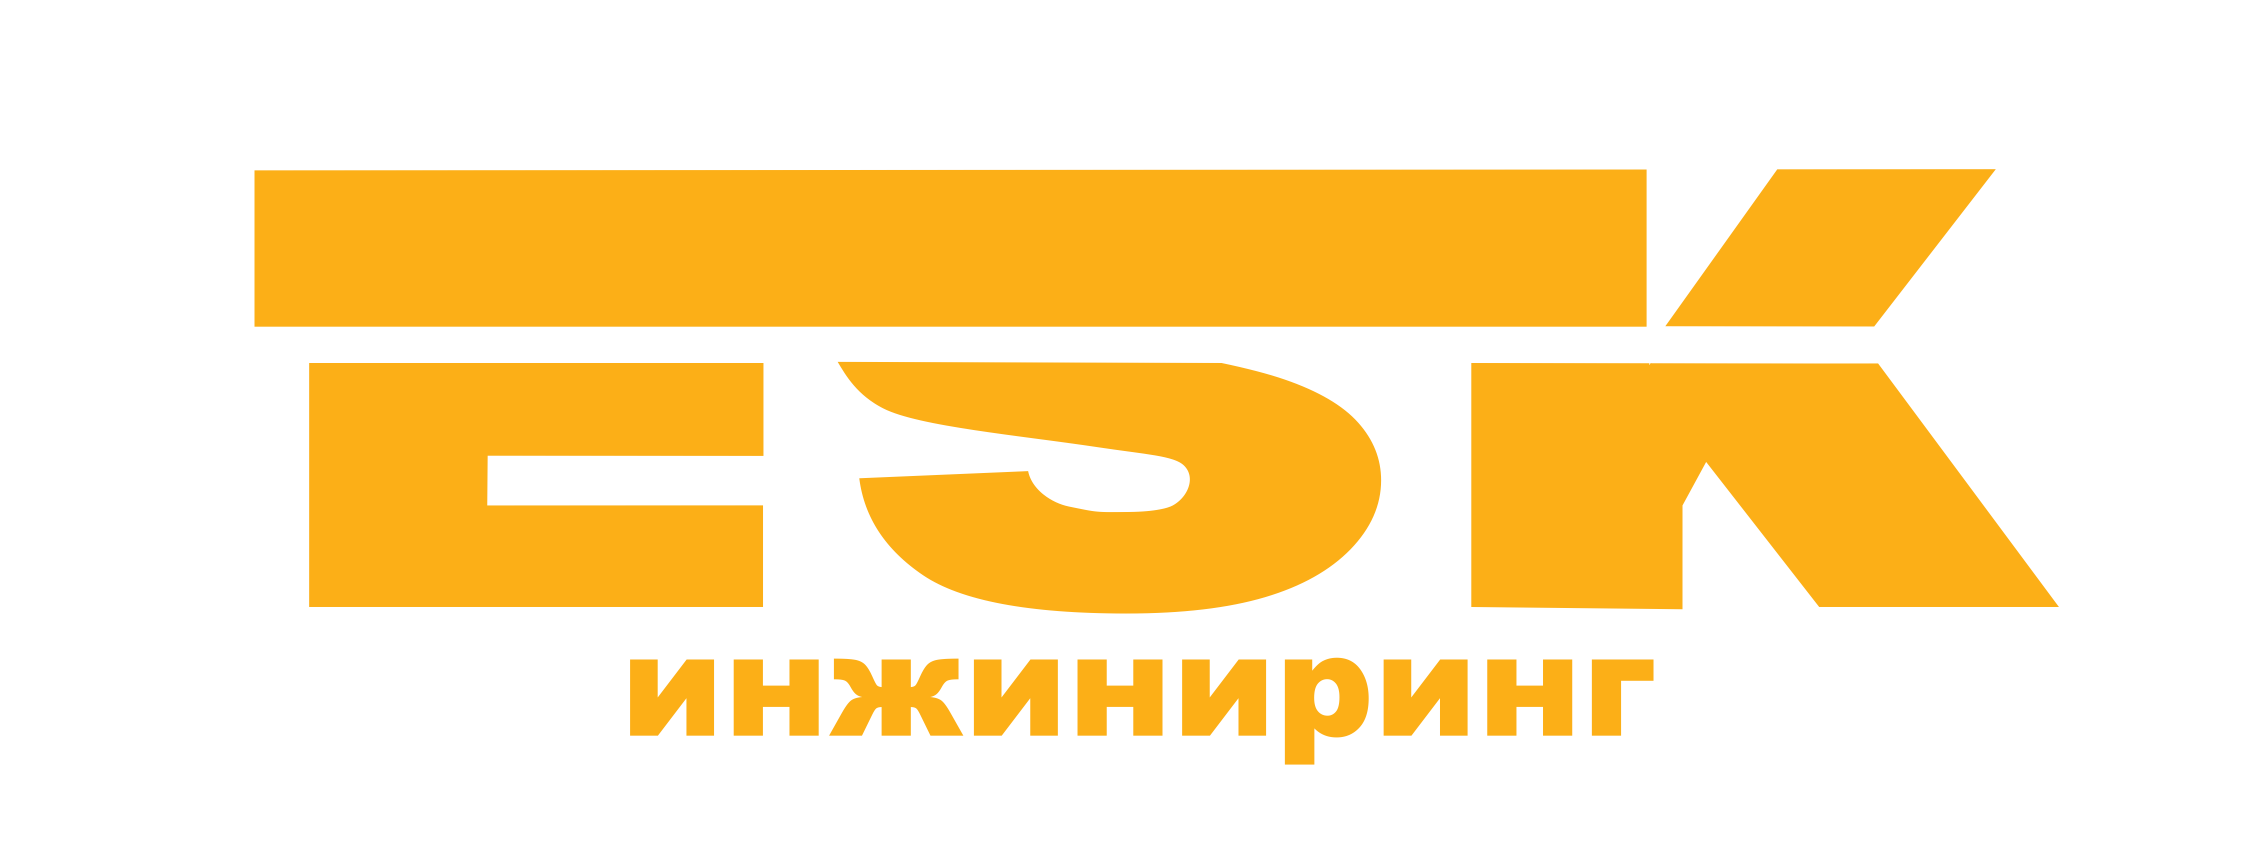 Электротехническая компания ЕСК-Инжиниринг